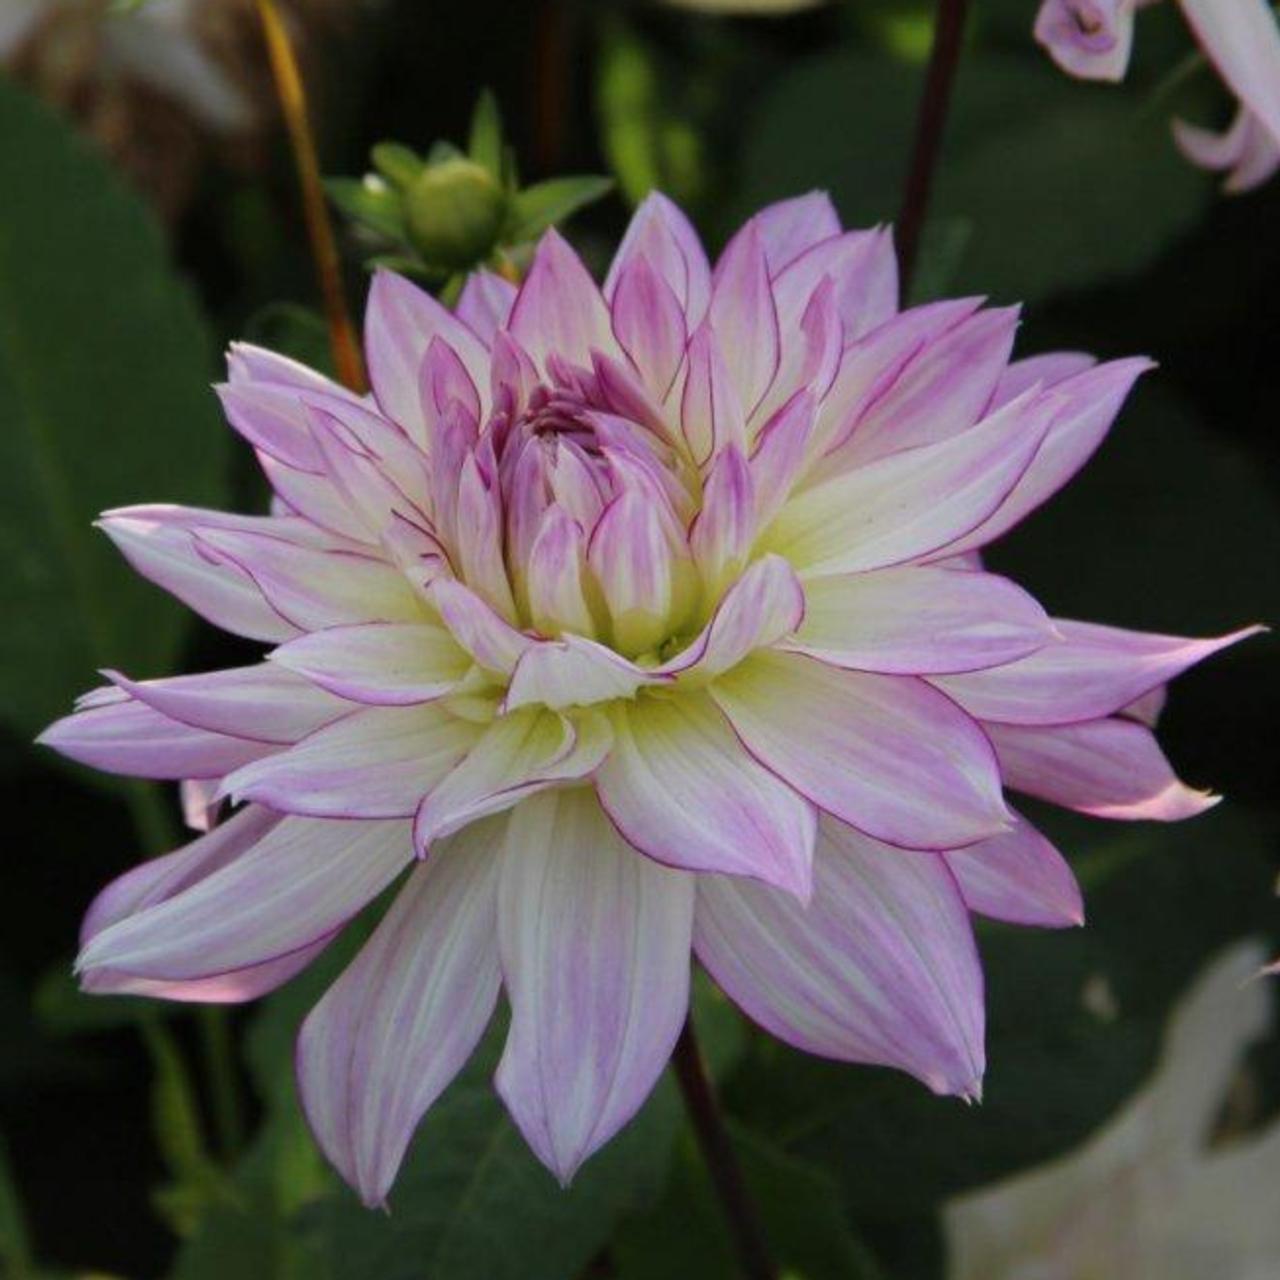 Dahlia 'Crazy Love' plant